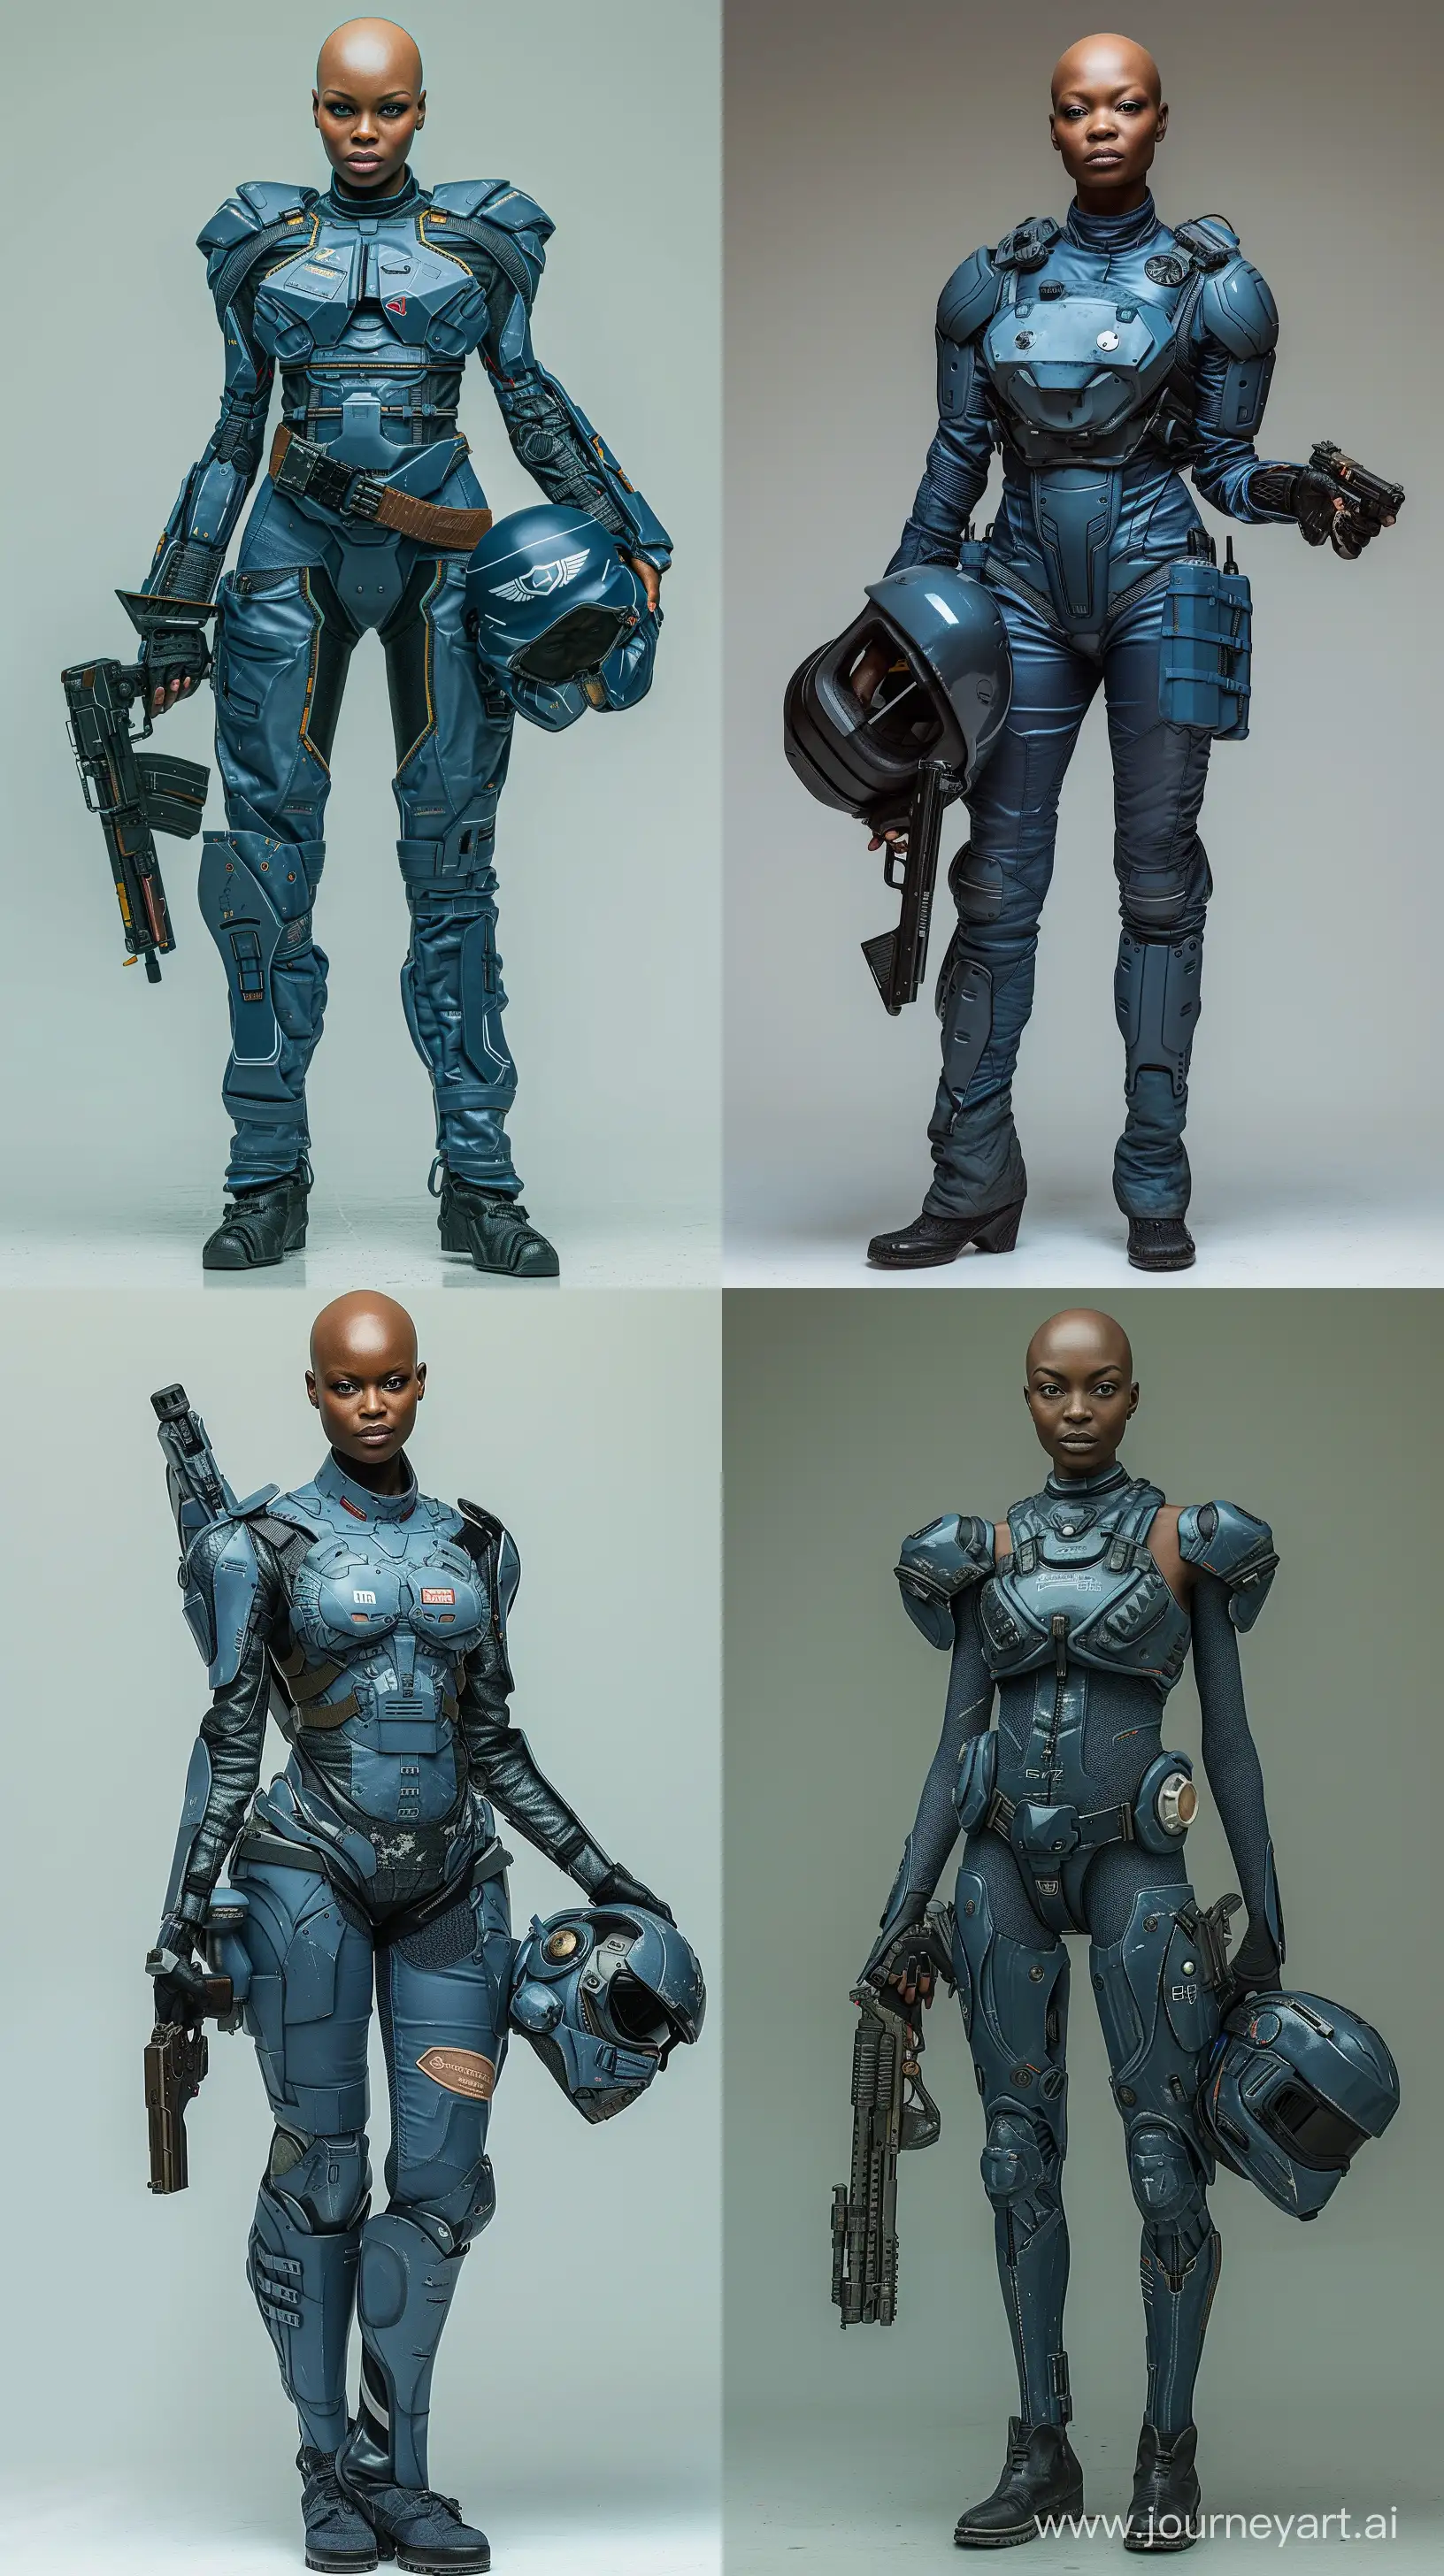 Futuristic-Black-Female-Warrior-in-Blue-Armor-with-Retro-SciFi-Gun